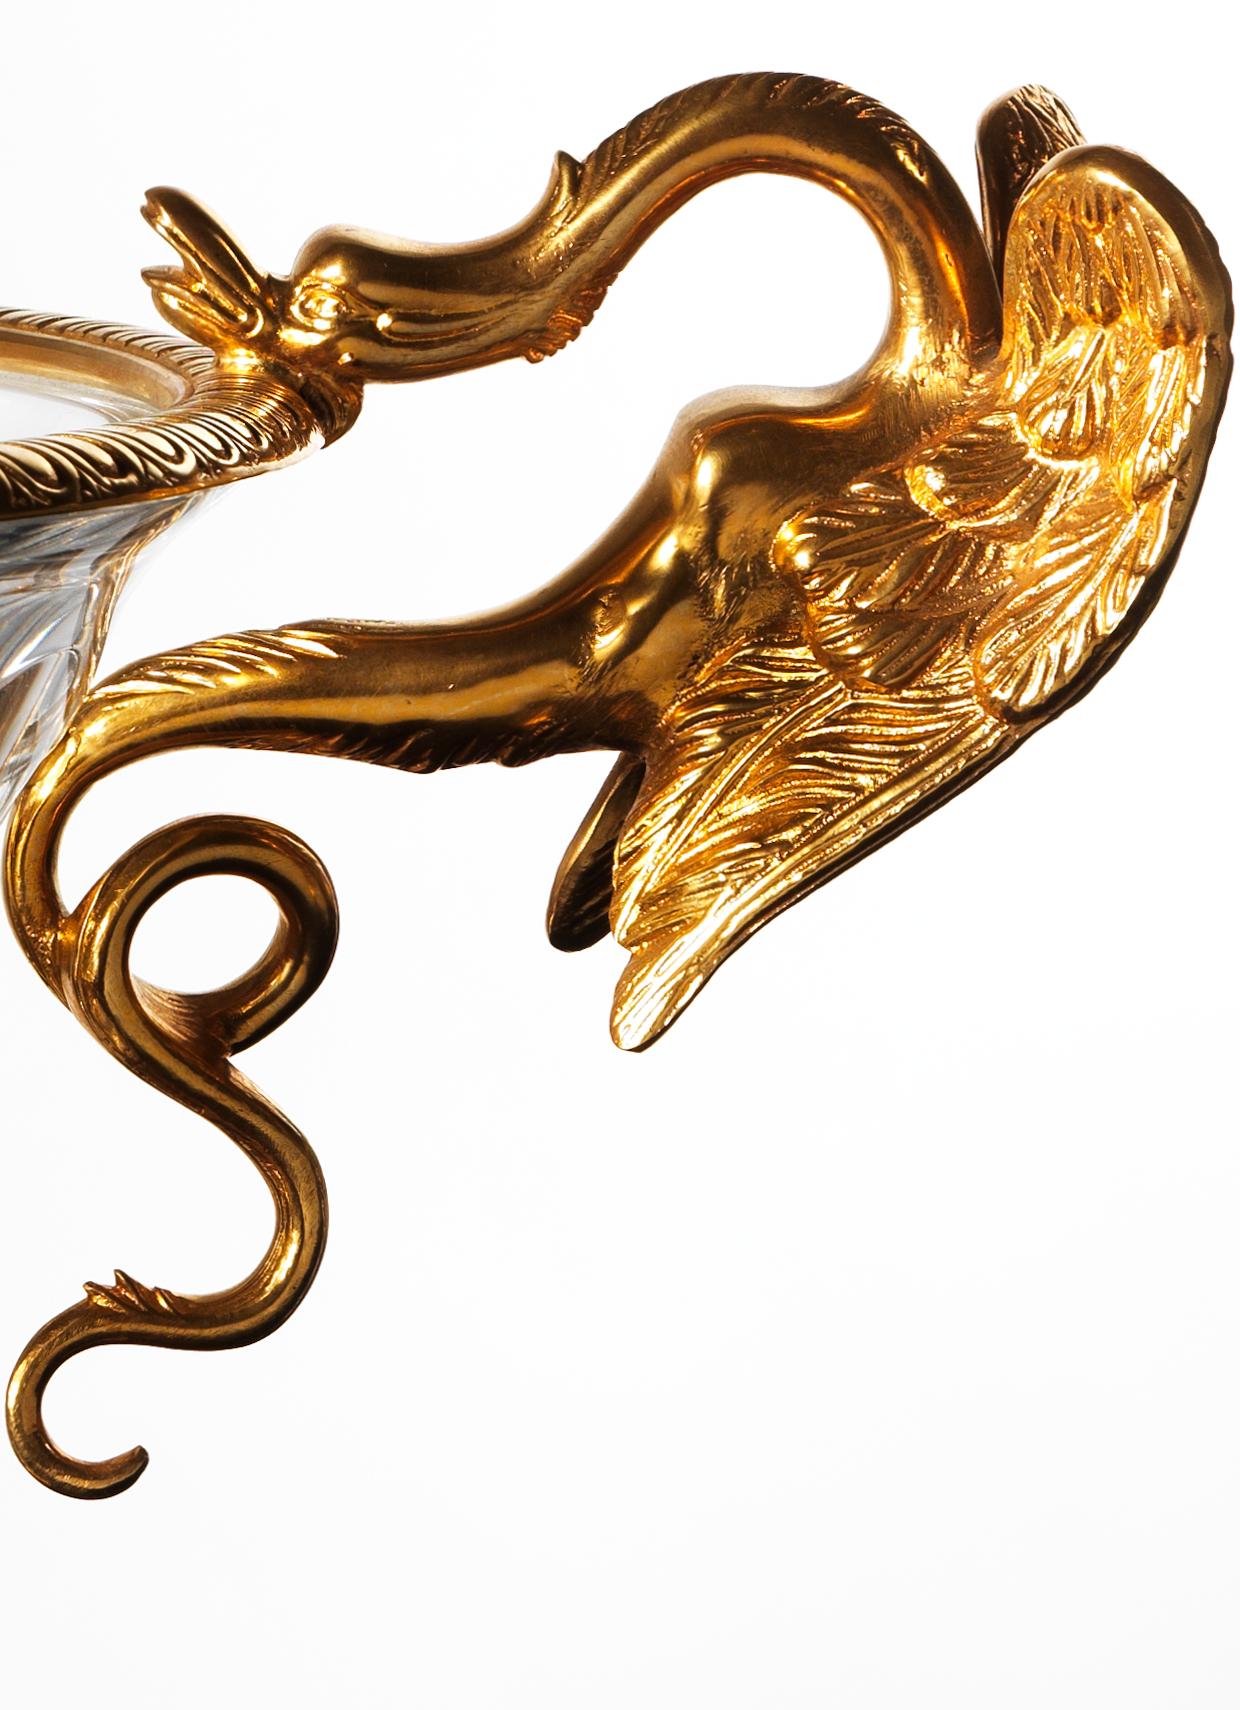 Cette coupe de style Louis XVI en bronze doré et cristal présente un bronze ciselé de haute qualité. Le bord supérieur du gobelet en cristal est orné d'une bordure en bronze avec des gravures géométriques, mais les poignées en forme de dragon